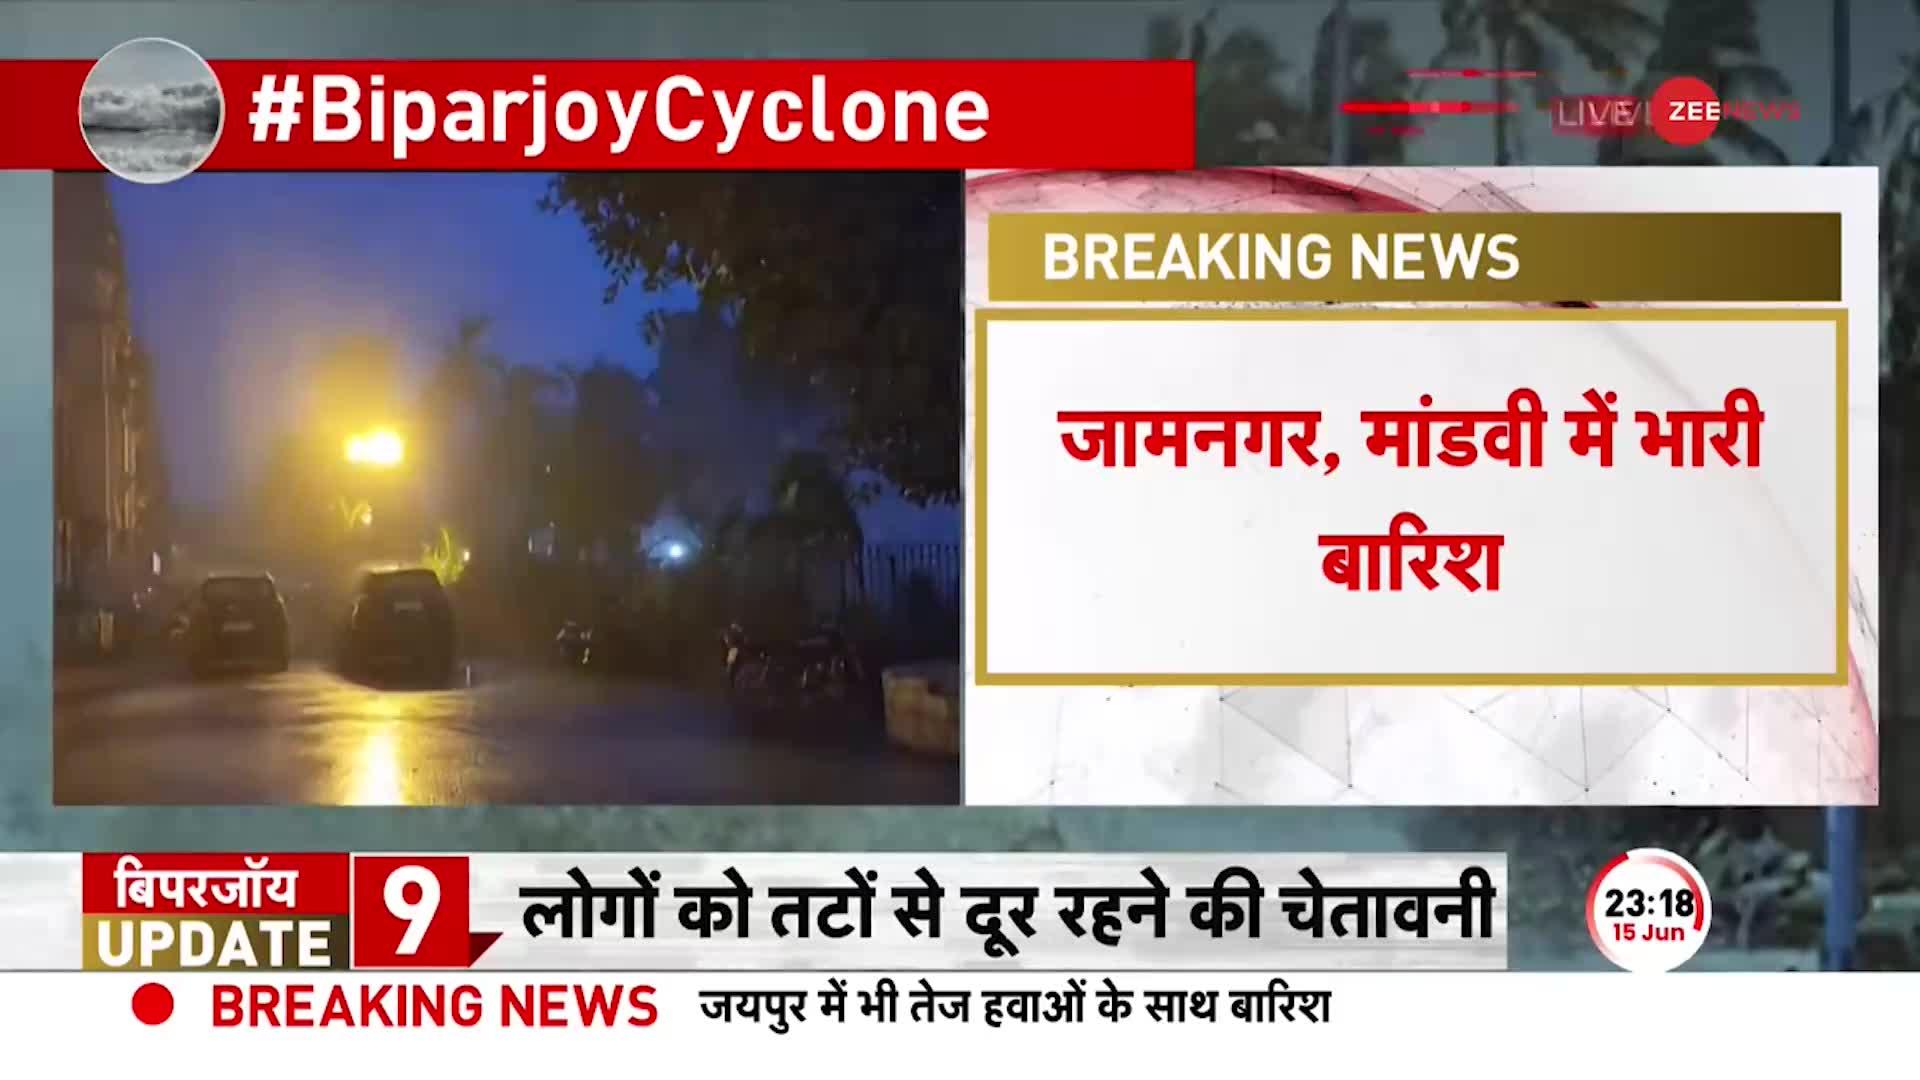 Big Breaking News: गुजरात से टकरा चुका है 'बिपरजॉय' तूफान, हालात बेहद गंभीर